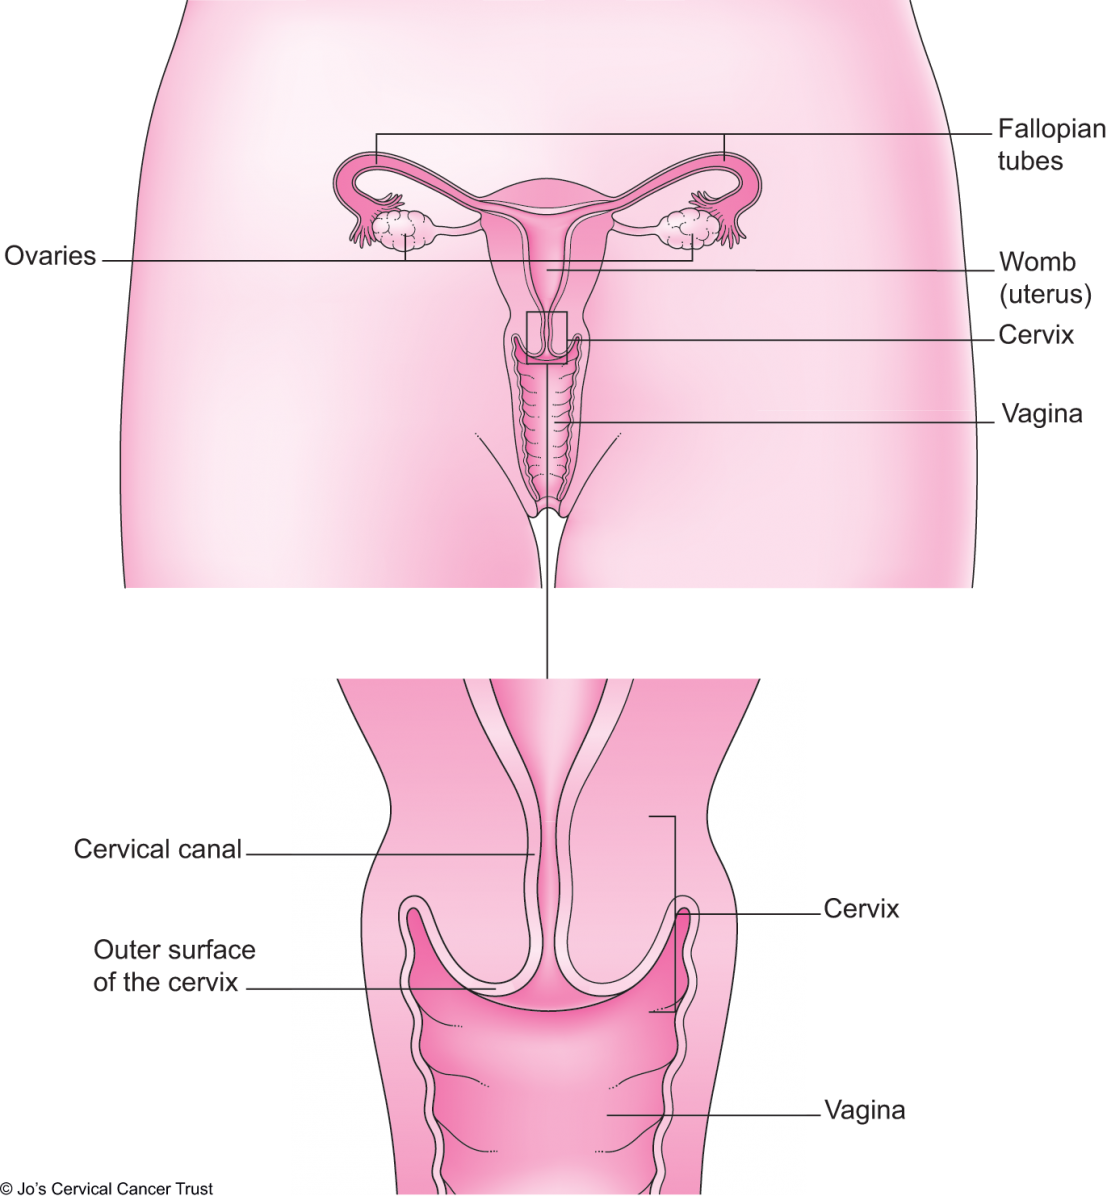 livmoderhalsen som visar den yttre ytan och cervikalkanalen